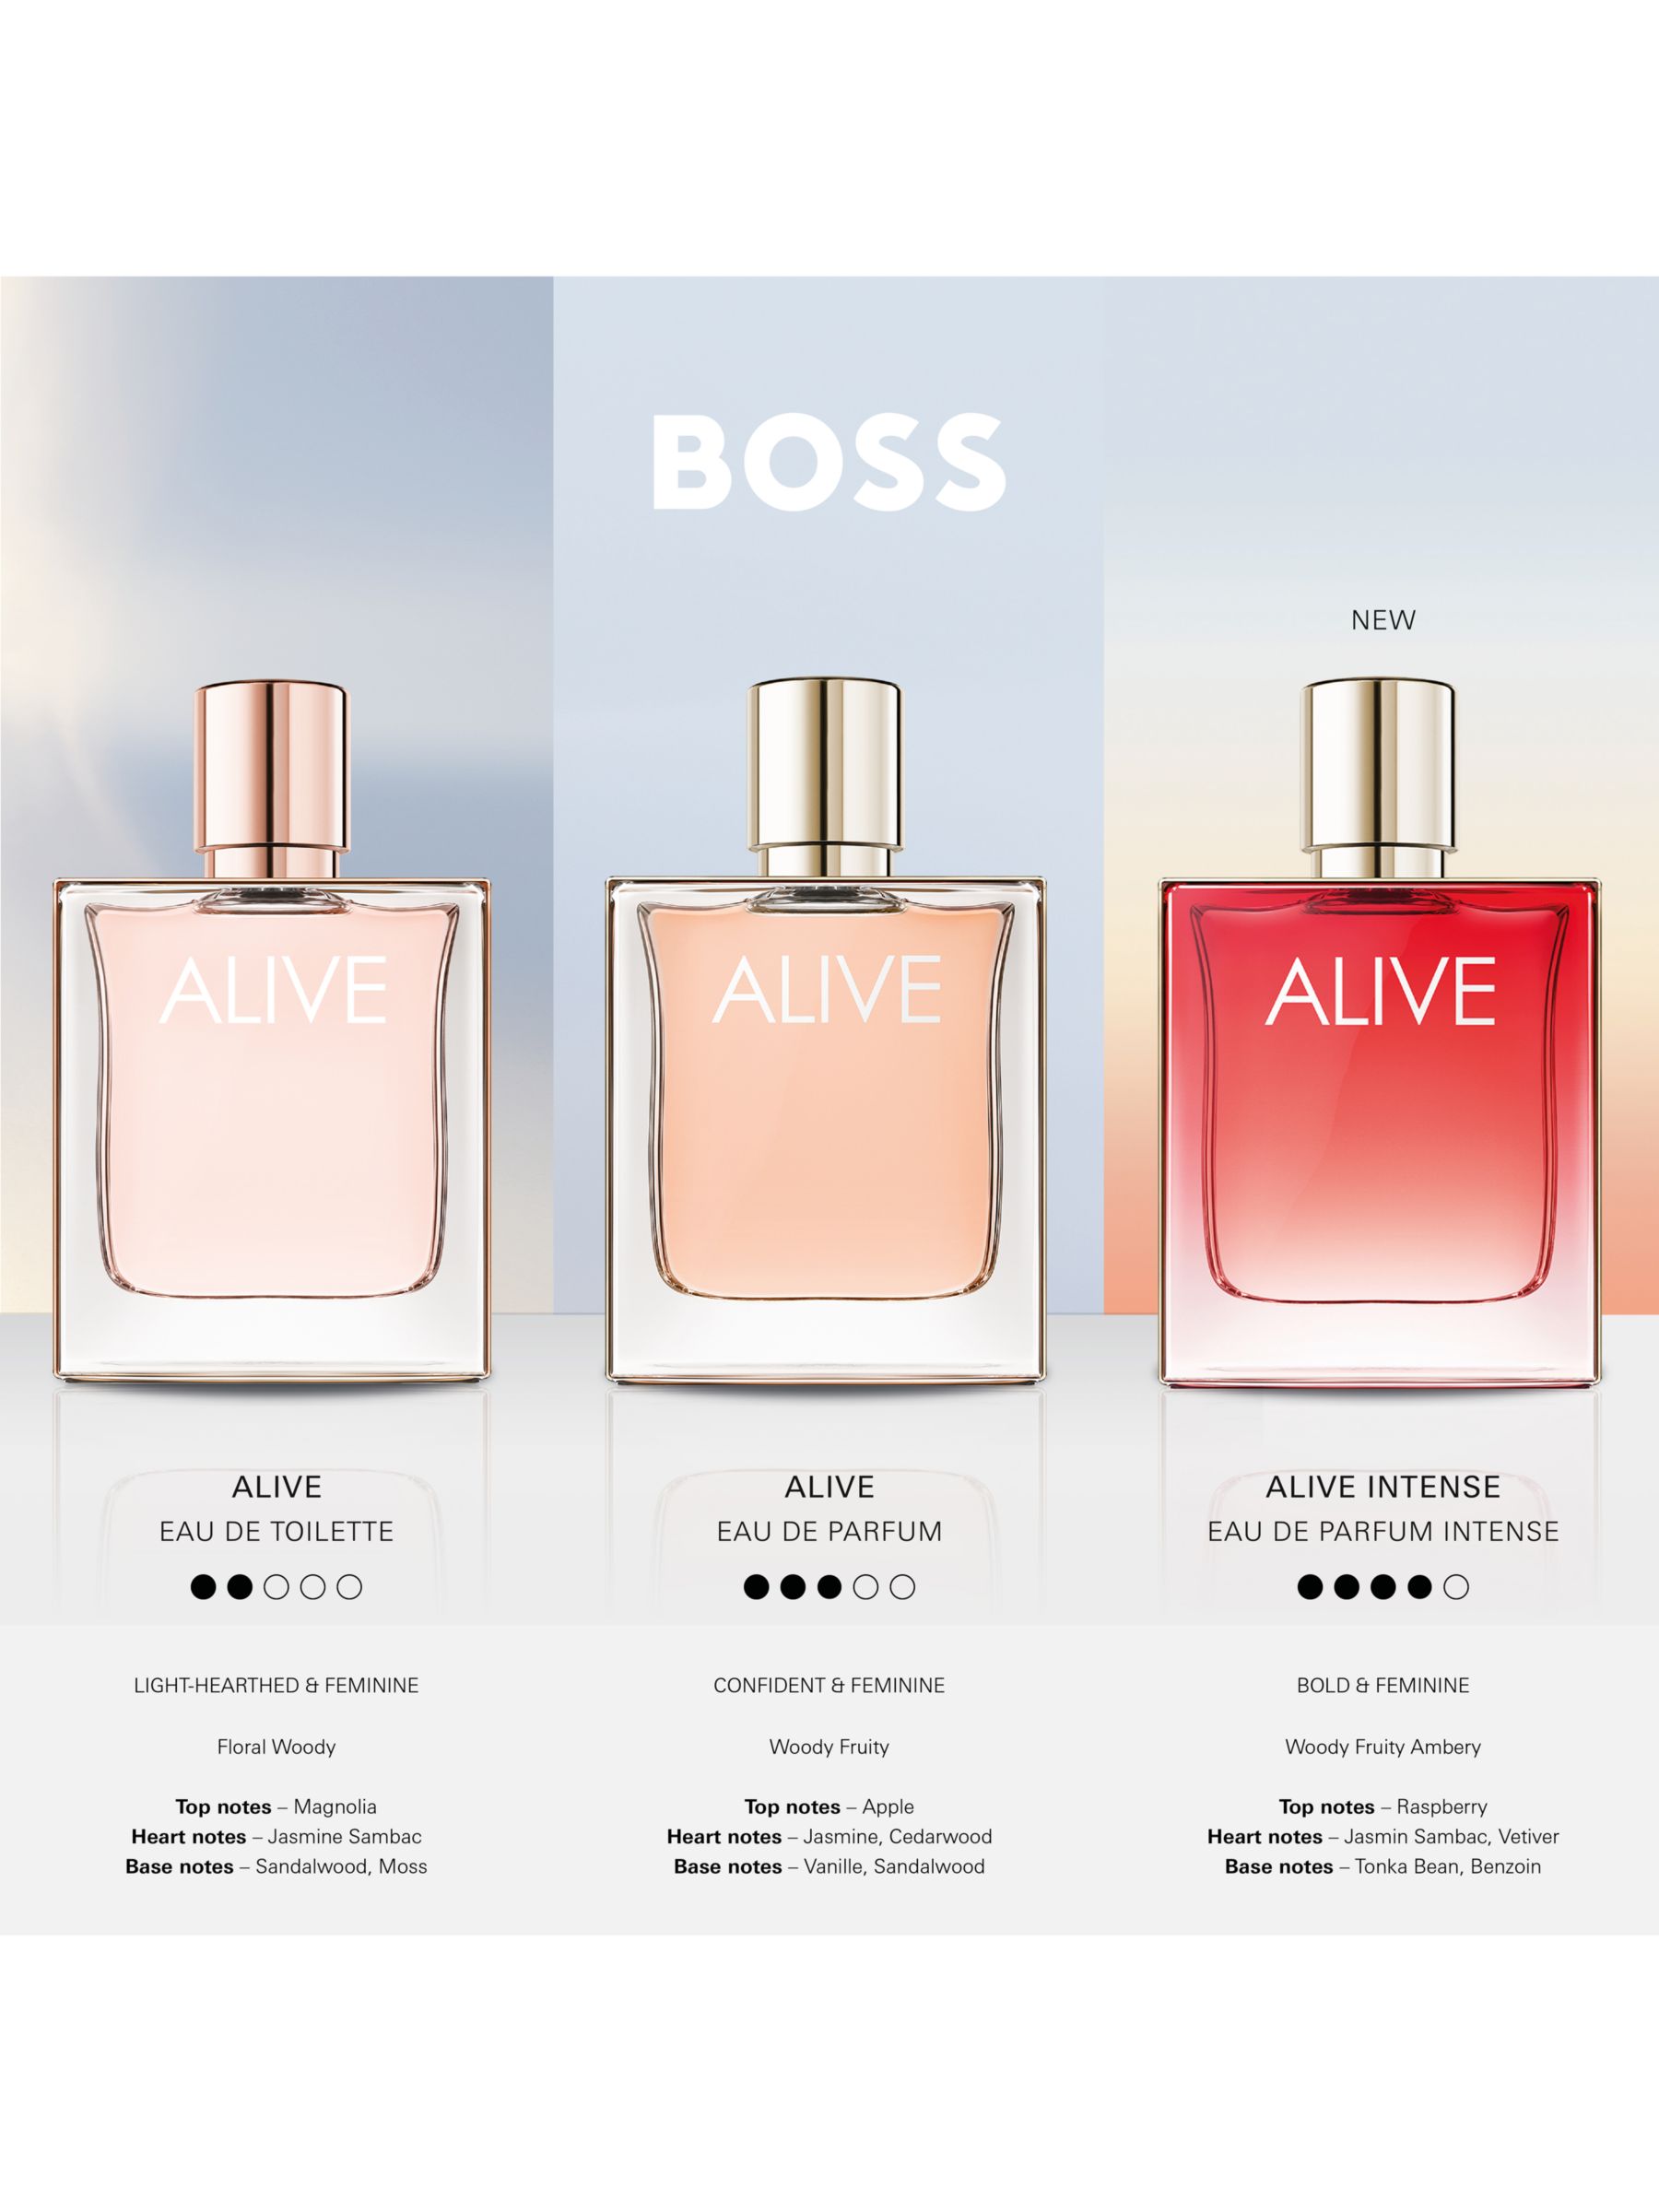 HUGO BOSS BOSS Alive Intense Eau de Parfum, 30ml